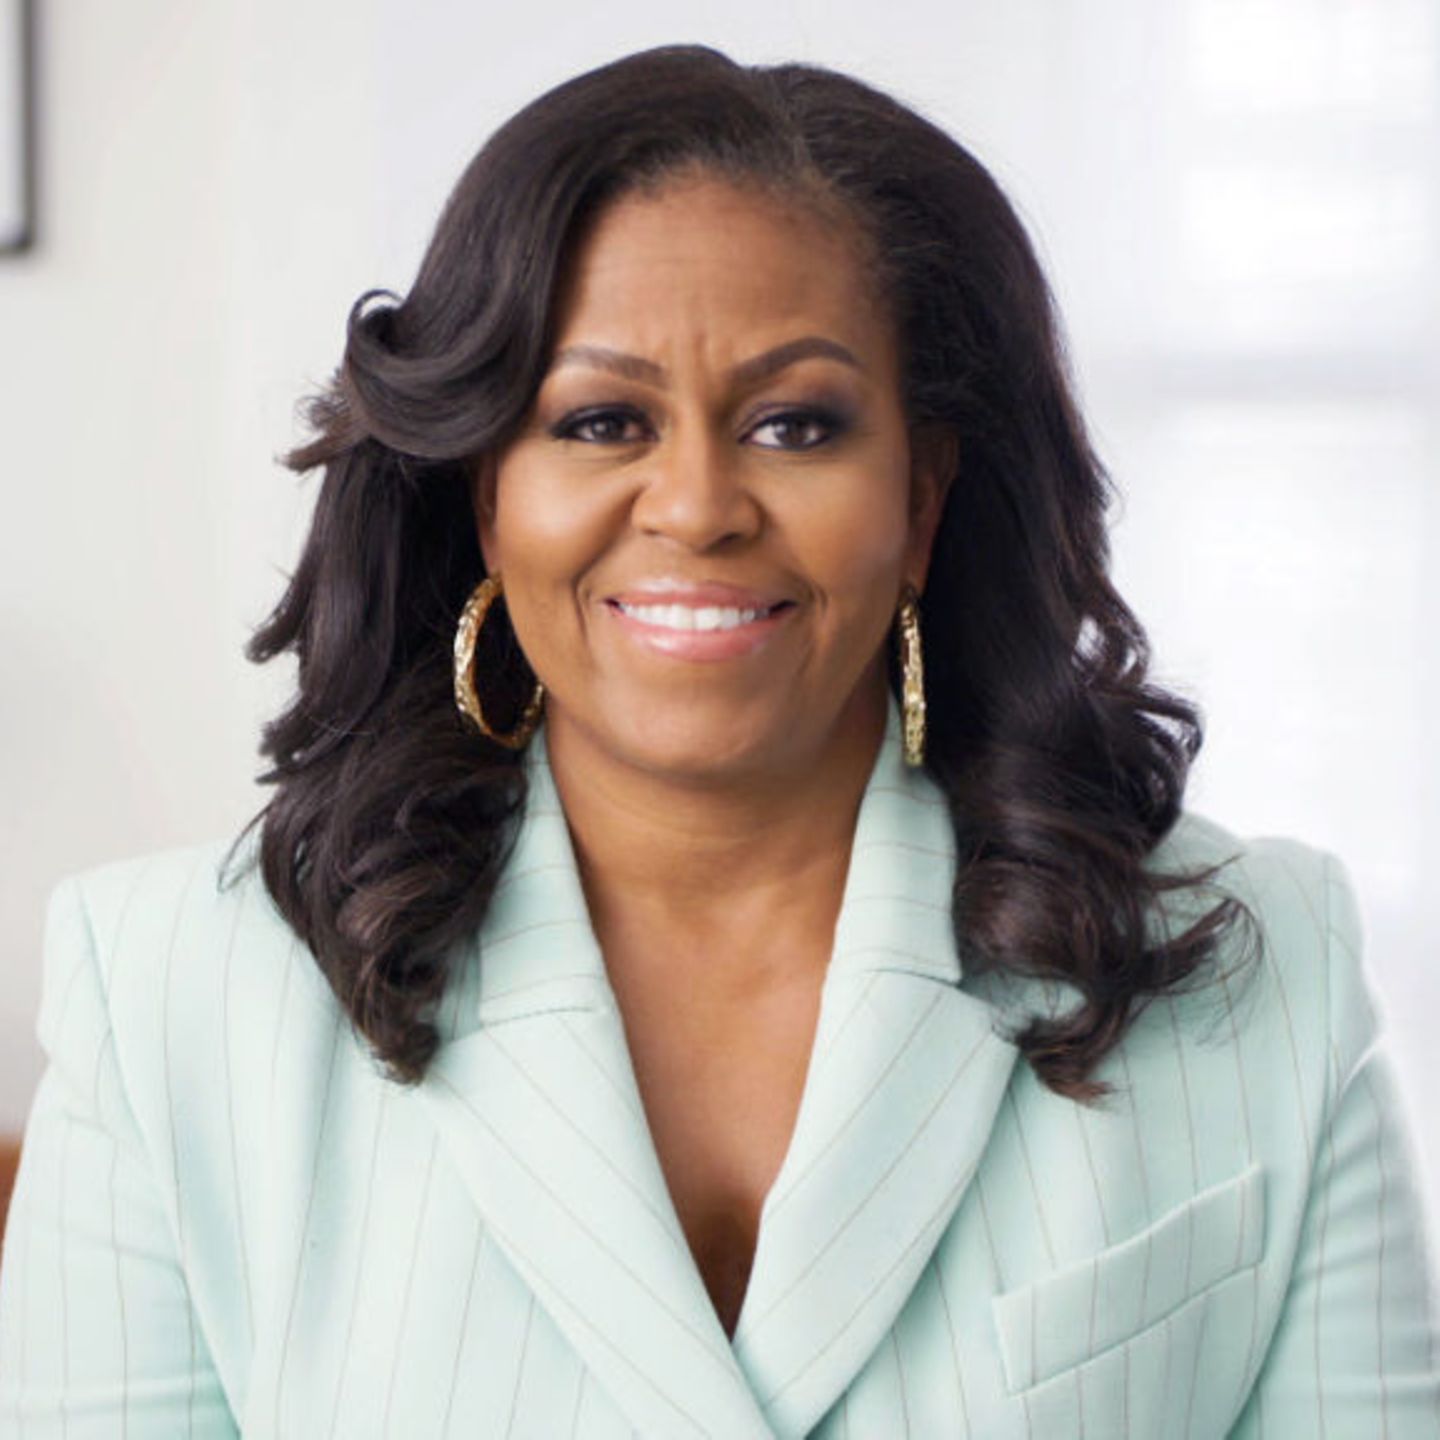 Michelle Obama Steckbrief, News und Infos